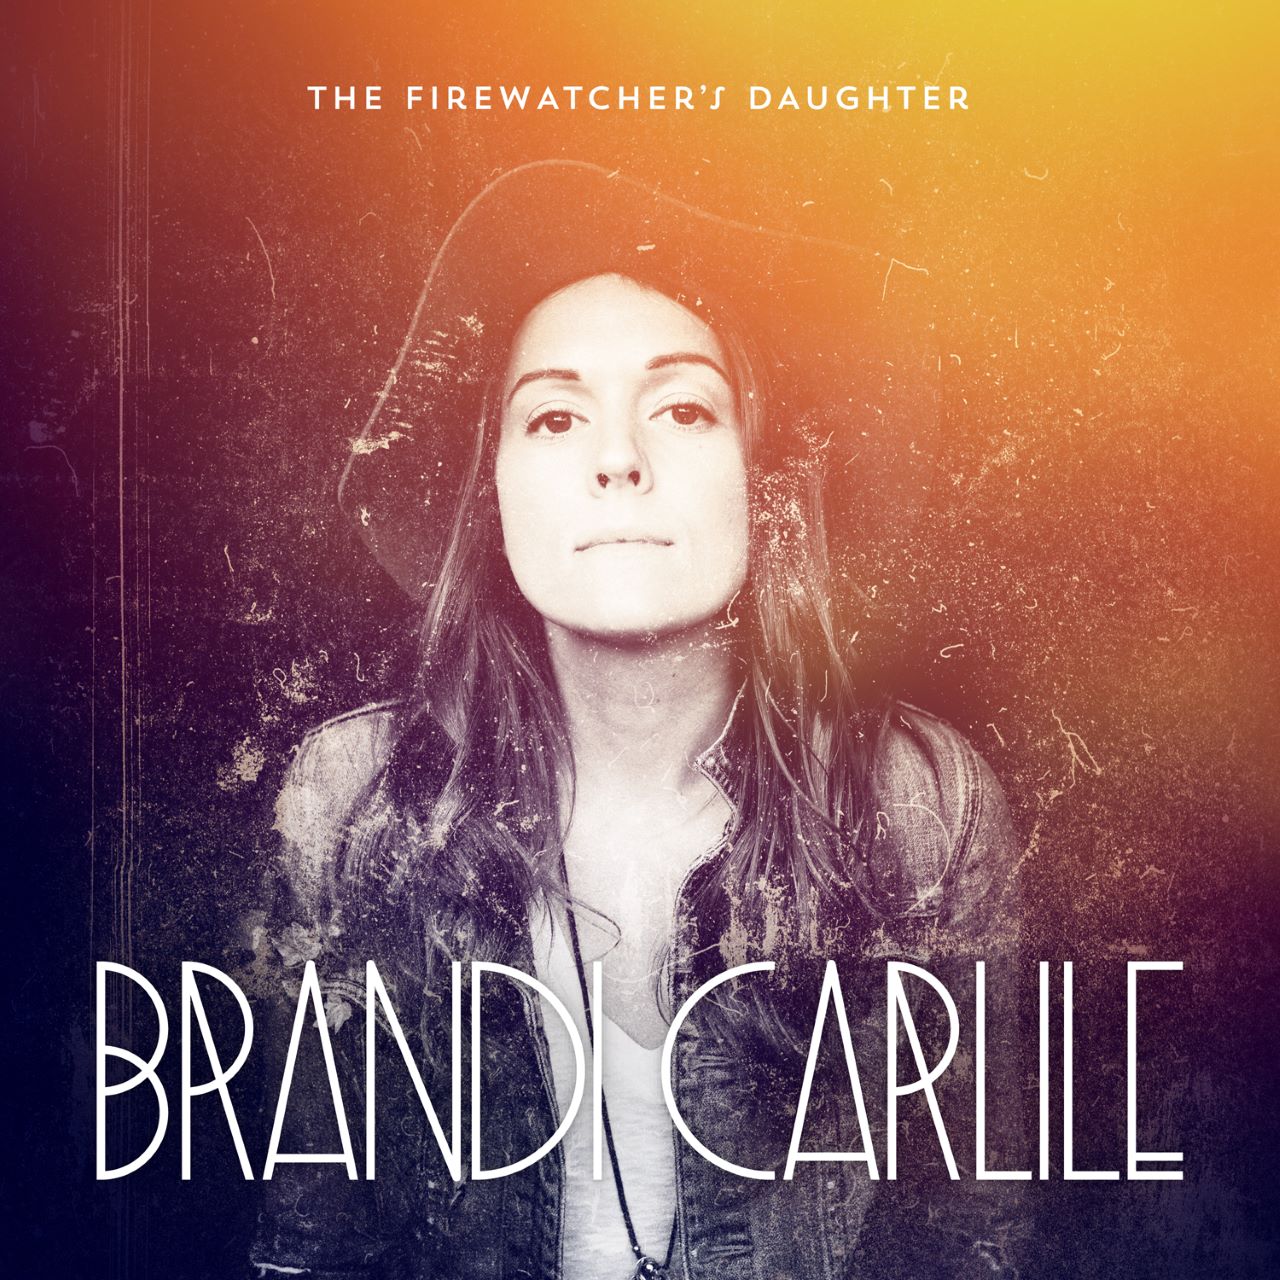 Brandi Carlile – The Firewatcher’s Daughter cover album